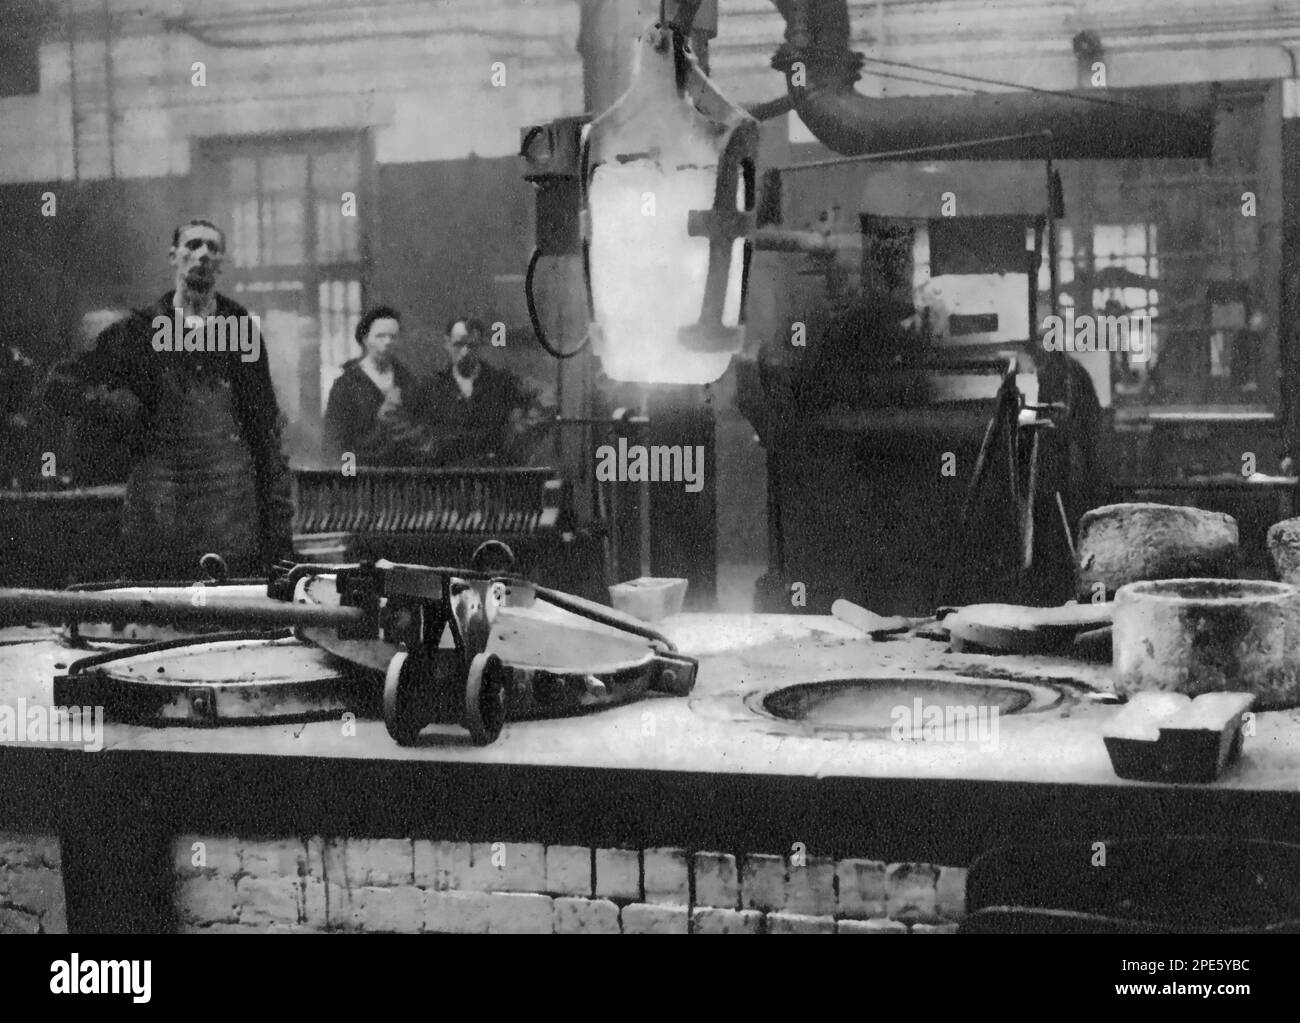 The Royal Mint, Tower Hill, Londra, c1933. Un crogiolo di argento fuso viene sollevato dal forno e portato alla macchina che agita il metallo liquido prima di essere versato in stampi. Foto Stock